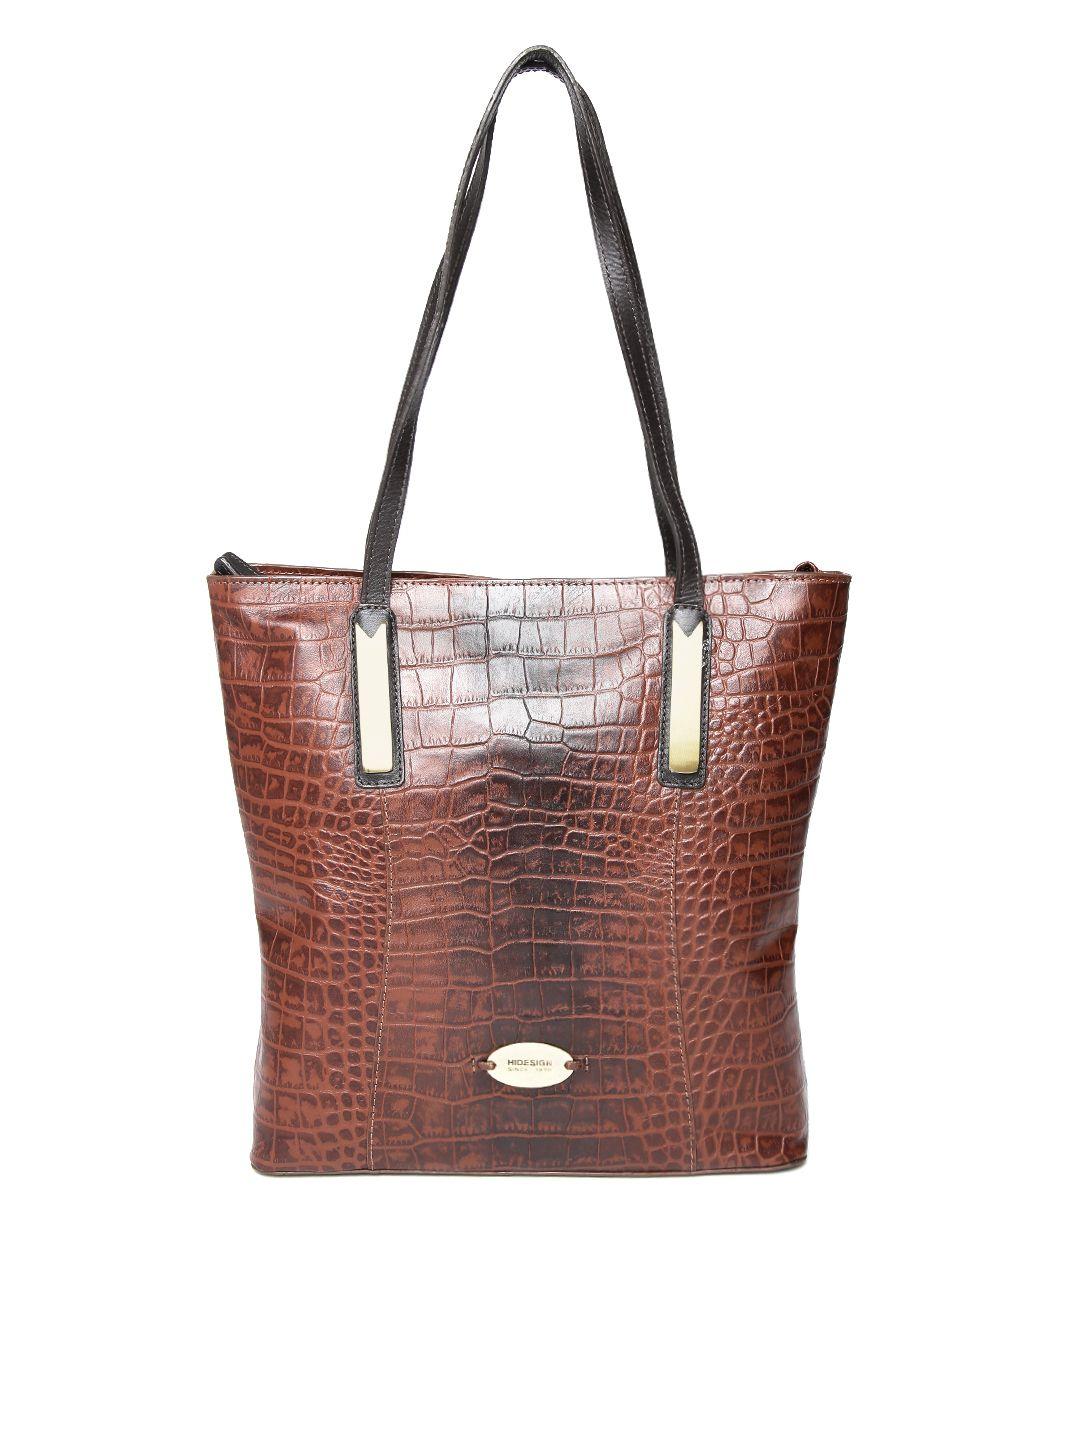 hidesign brown leather croc textured shoulder bag